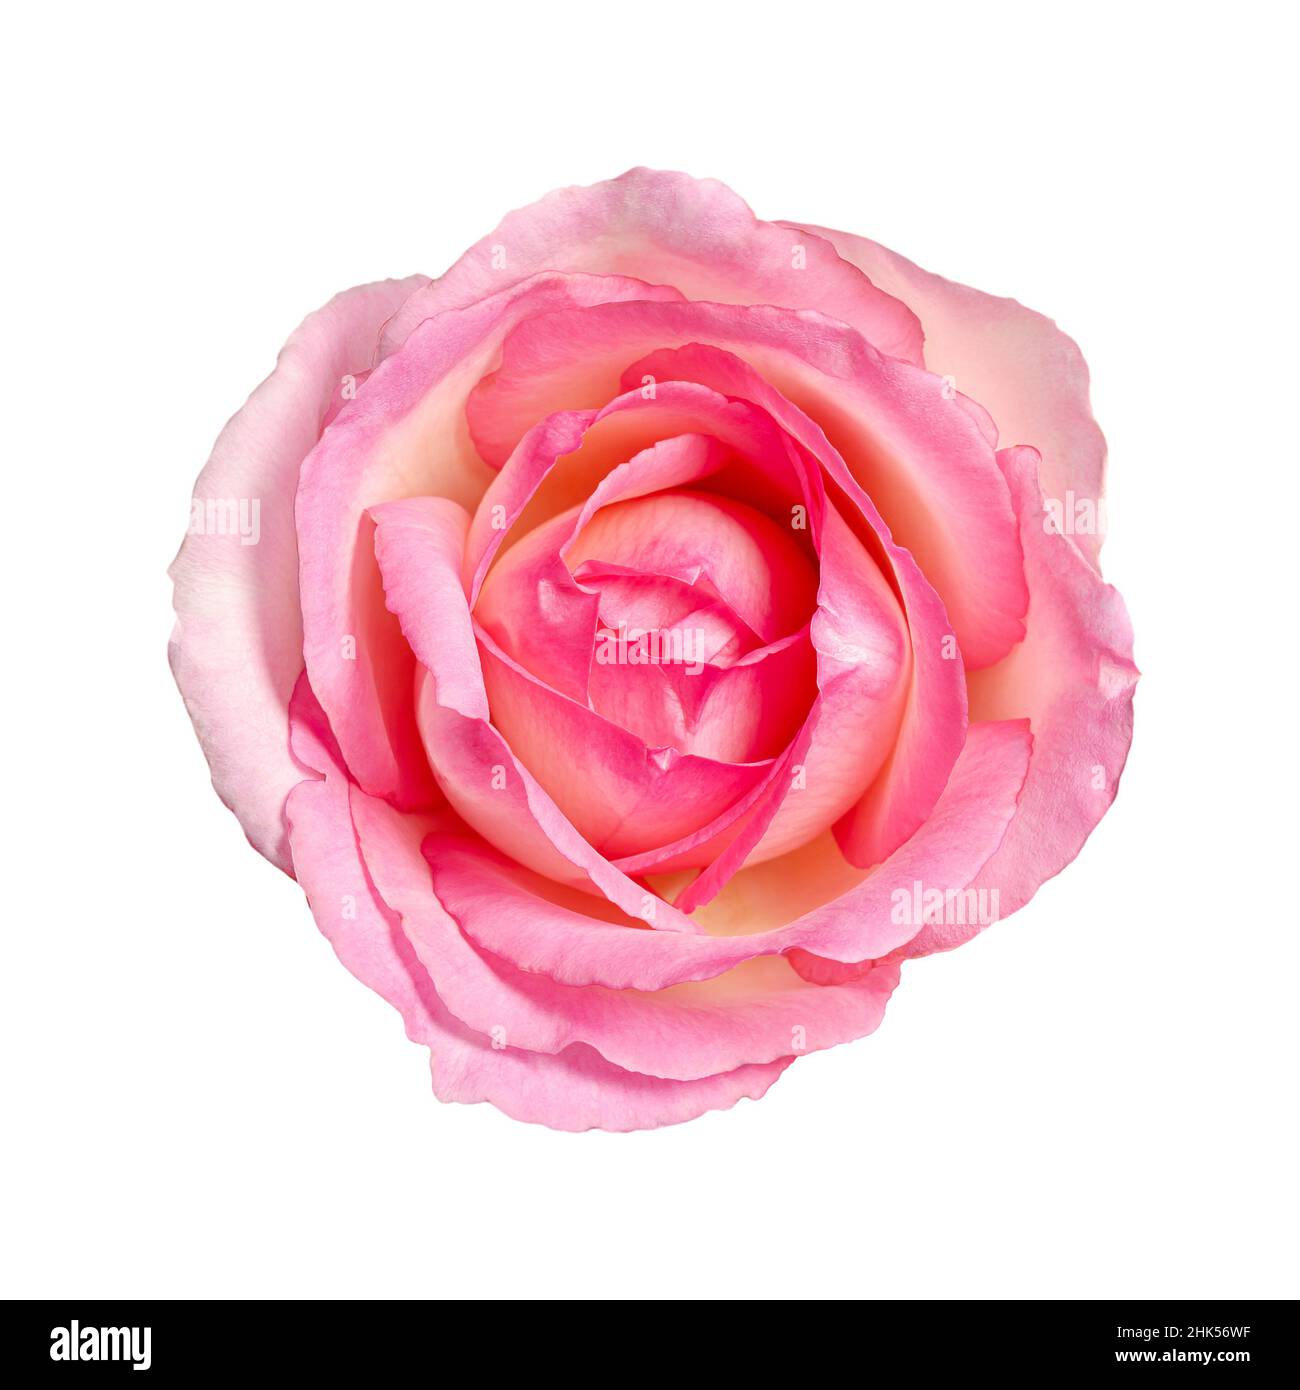 Rosenblüte, von oben, isoliert, auf weißem Grund. Hellrosa gefärbter Blütenkopf einer frisch geschnittenen Gartenrose, auch bekannt als Chinarose. Stockfoto